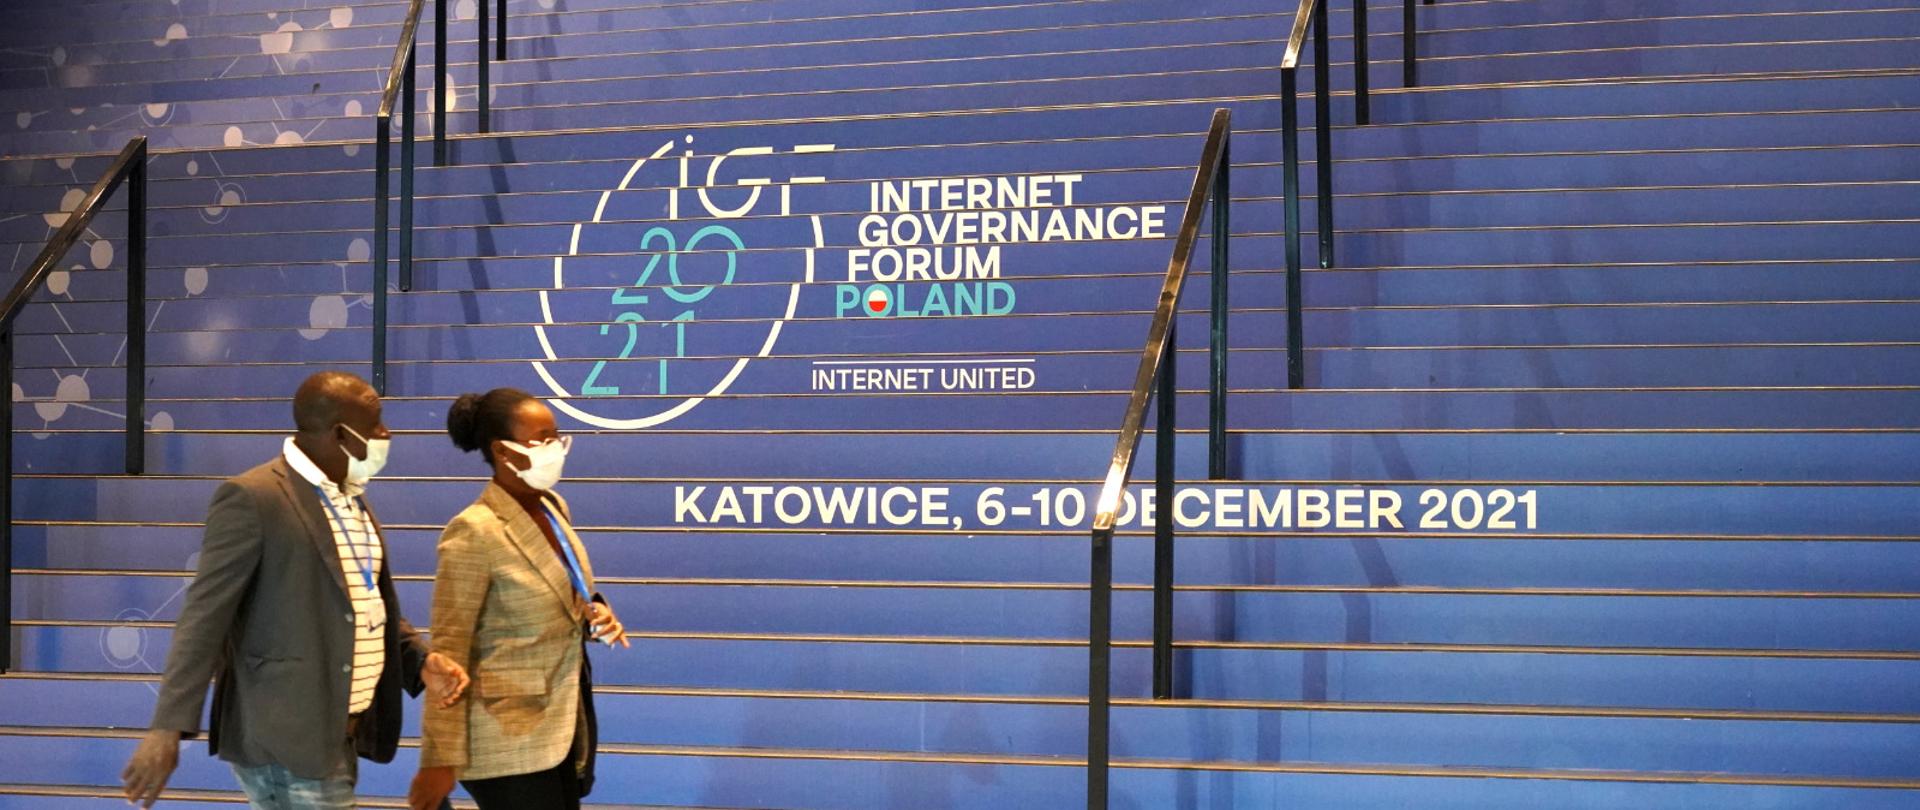 Dwoje uczestników Szczytu przechodzi obok schodów, na których widoczne jest logo IGF 2021 i napis Katowice, 6-10 grudnia 2021.